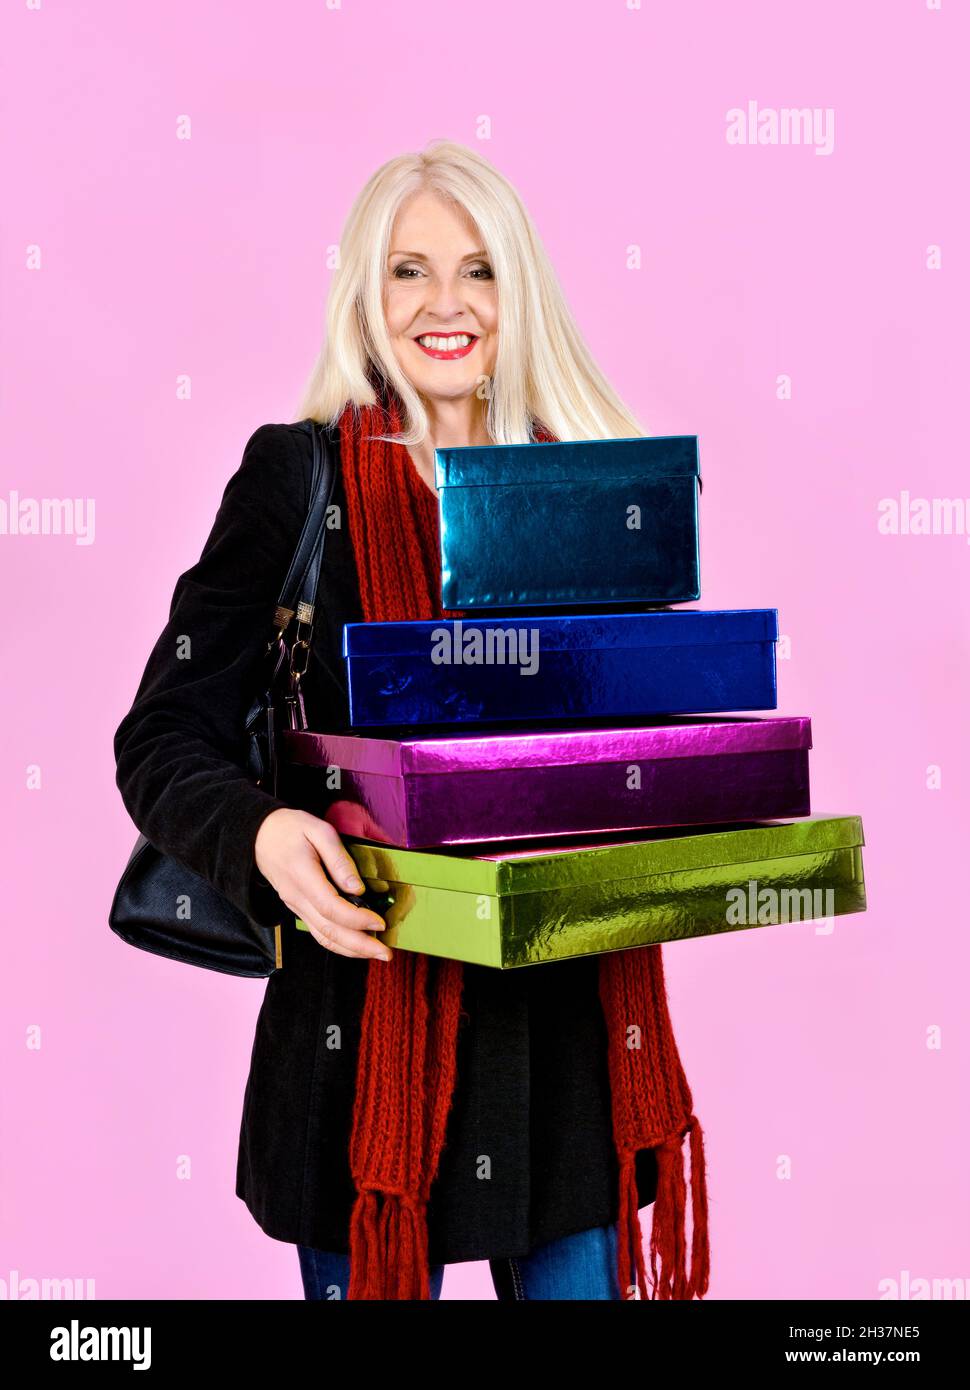 Atractiva dama rubia vestida de abrigo y bufanda riendo mientras llevaba un montón de cajas de colores o regalos, tomadas sobre fondo rosa Foto de stock